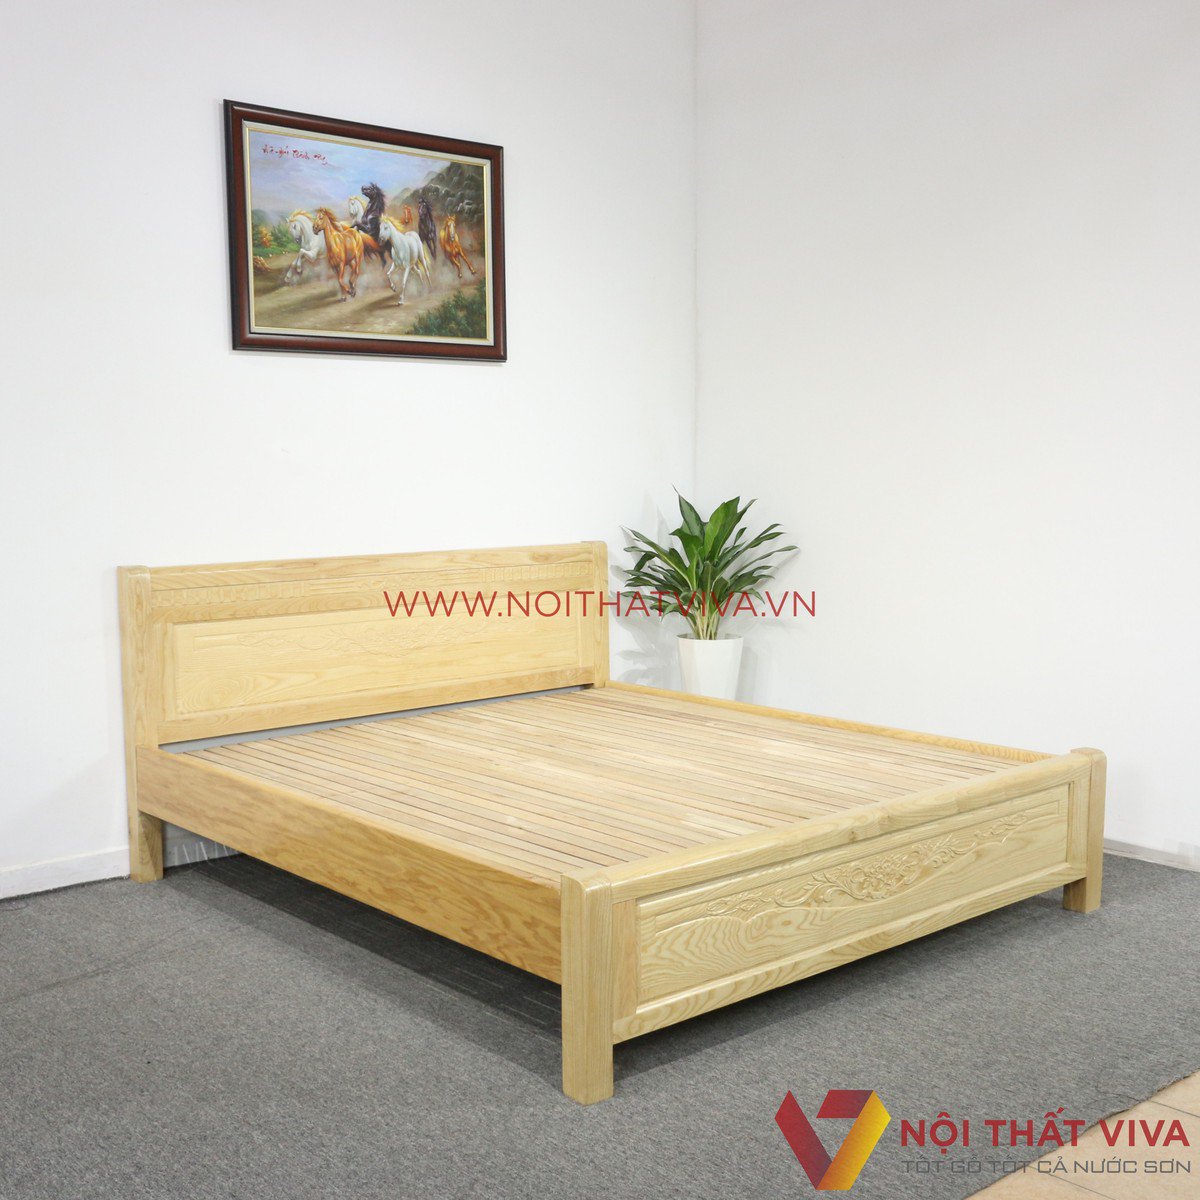 Mẫu giường ngủ gỗ chân cao cổ điển đẹp tại Nội thất Viva.